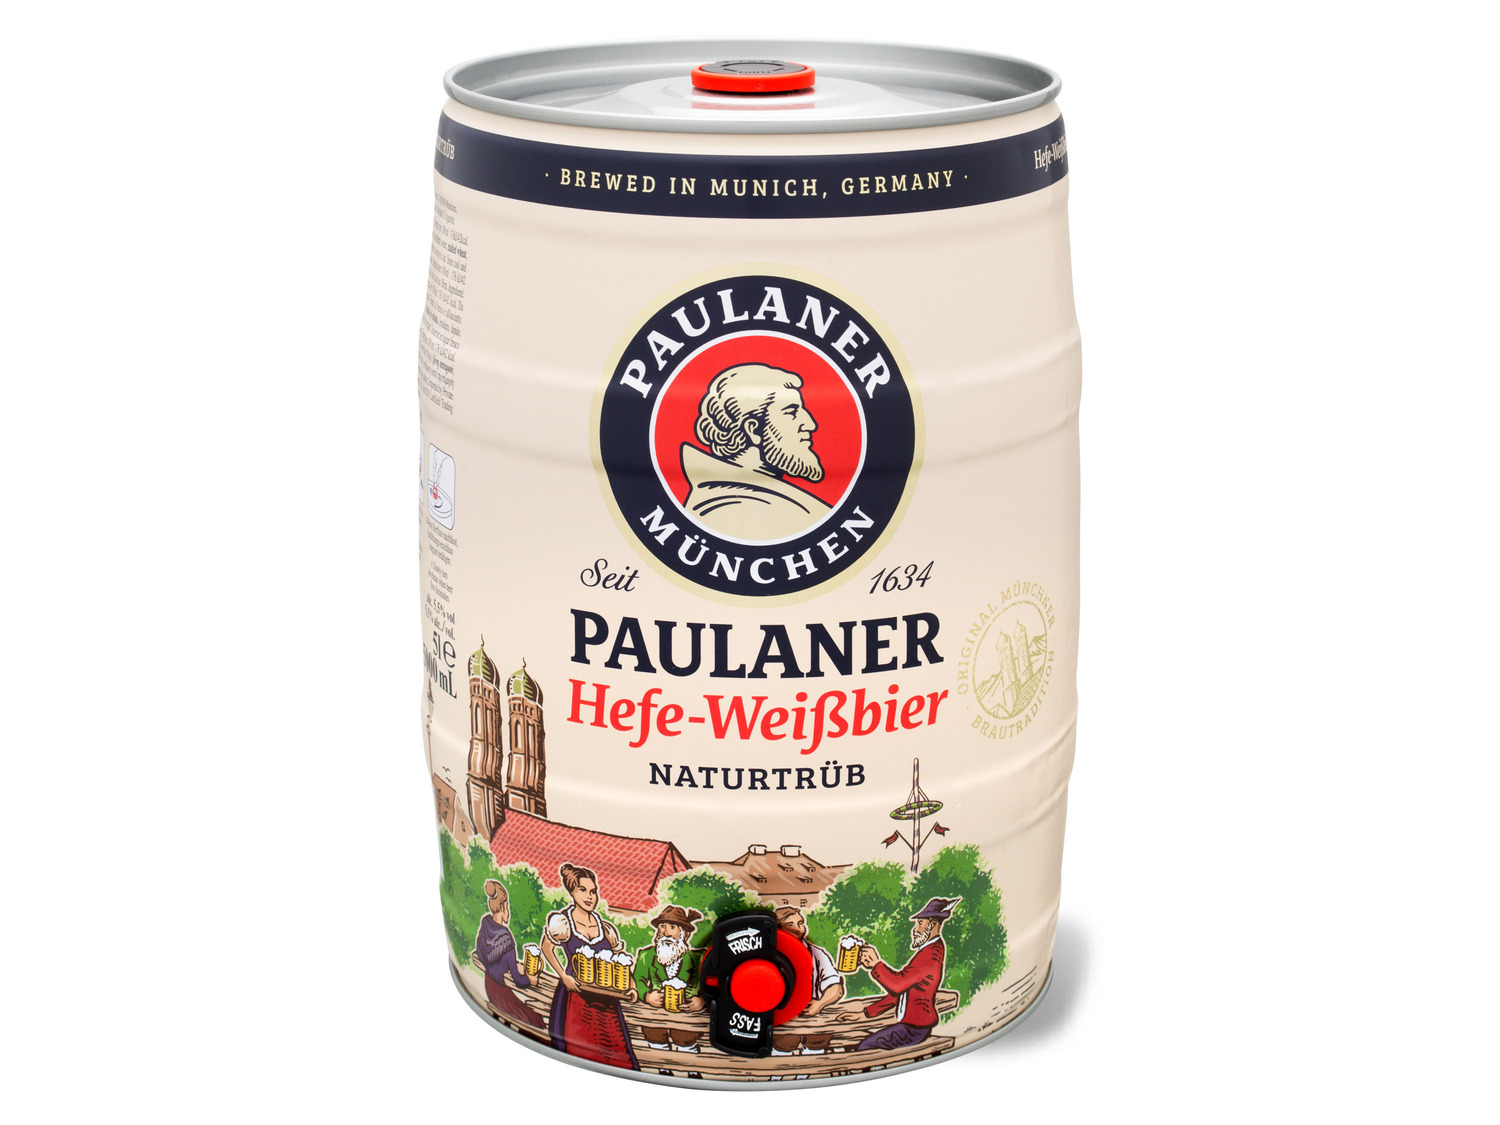 5 mit Paulaner Liter Bierfass Naturtrüb Hefe-Weißbier …